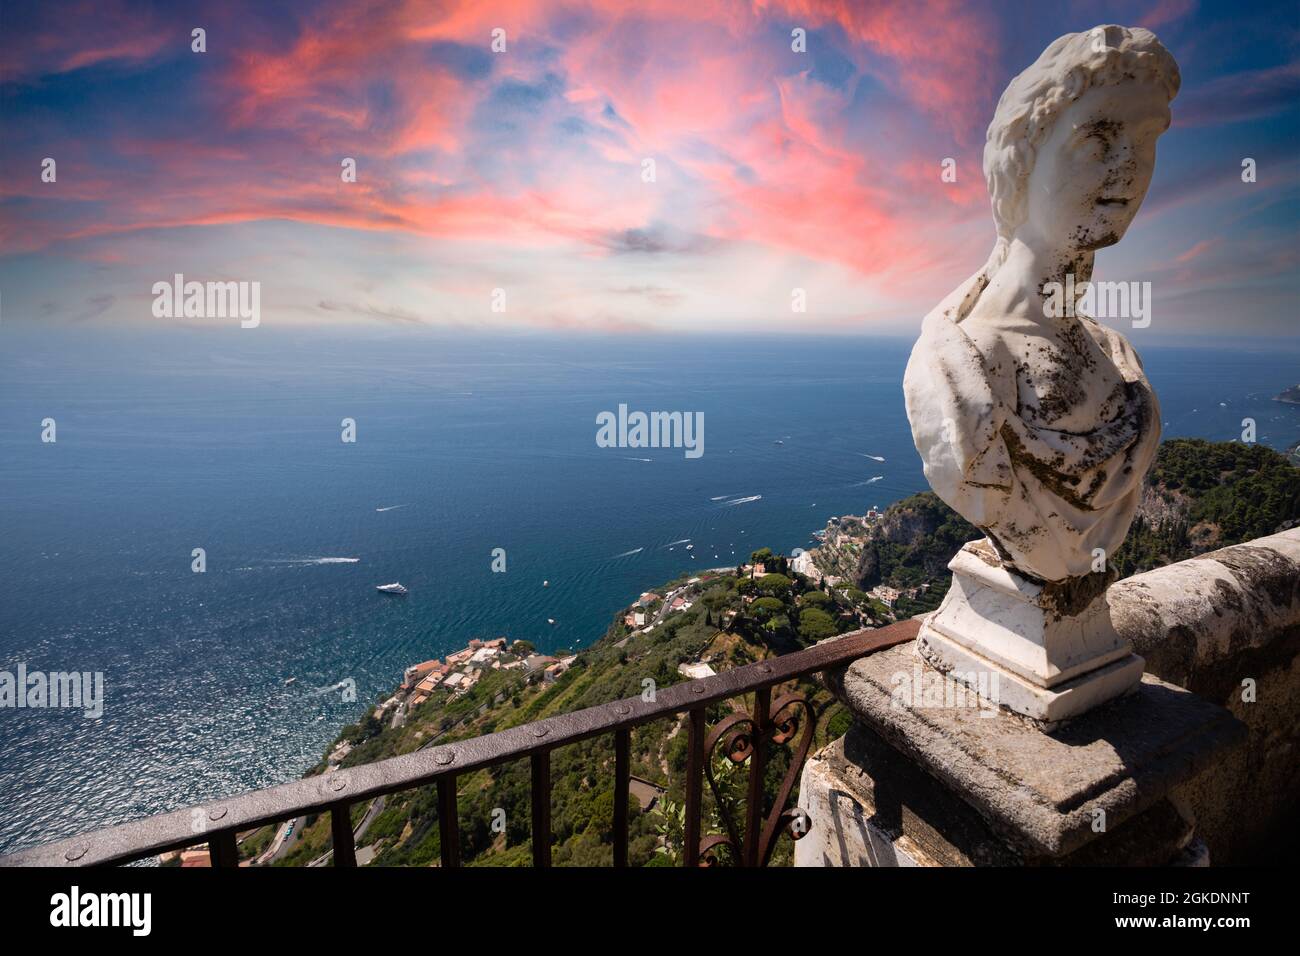 Infinity terrace in villa cimbrone, ravello, amalfi coast Stock Photo